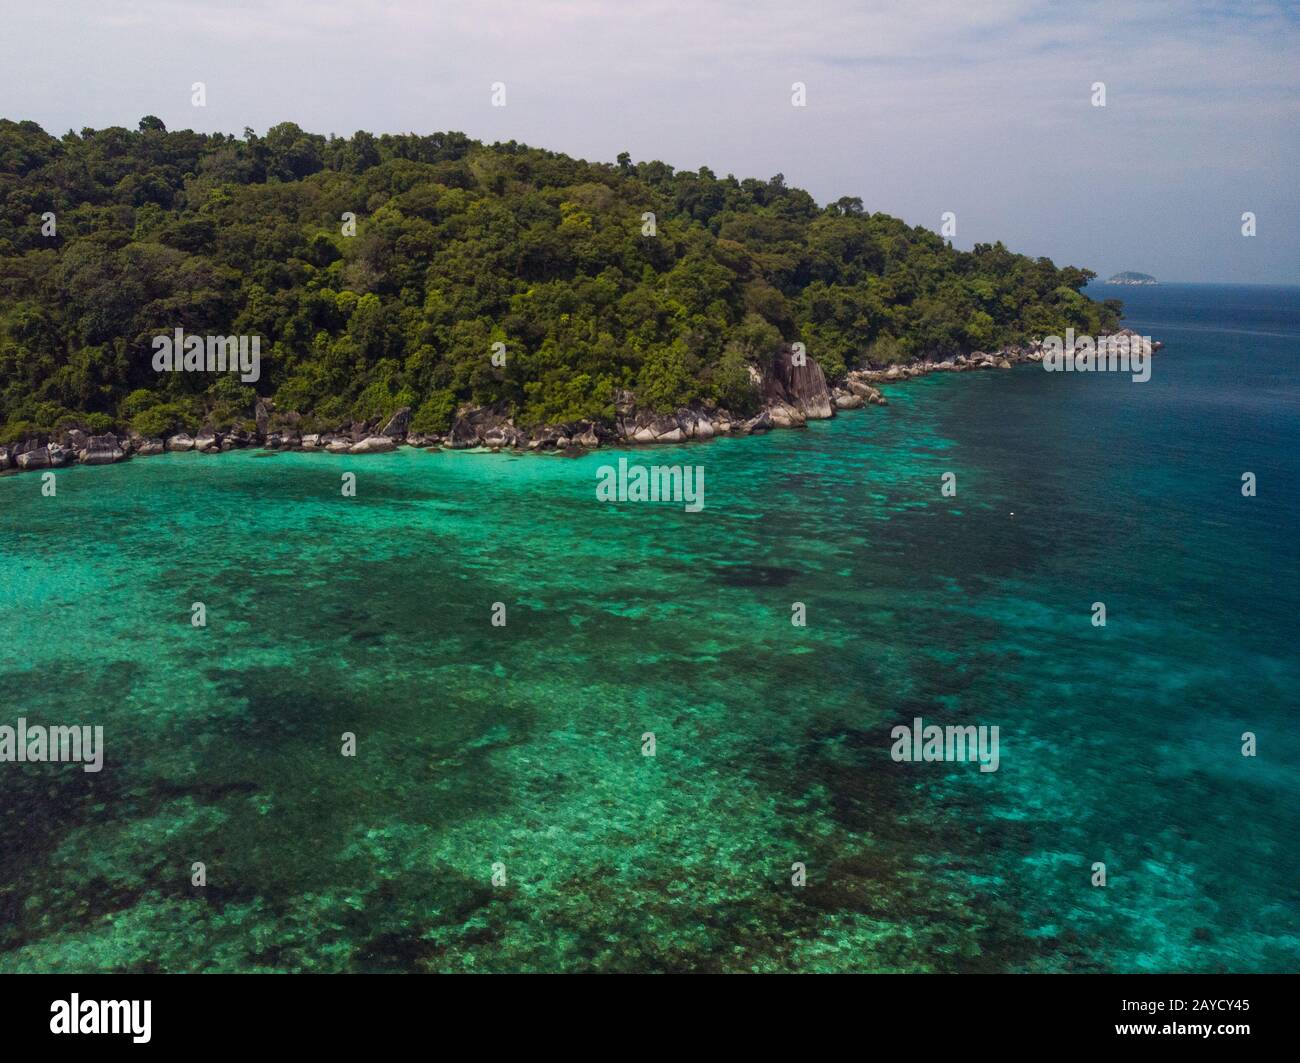 Un viaje de buceo en el agua cristalina frente a una isla solitaria en el sudeste asiático Foto de stock